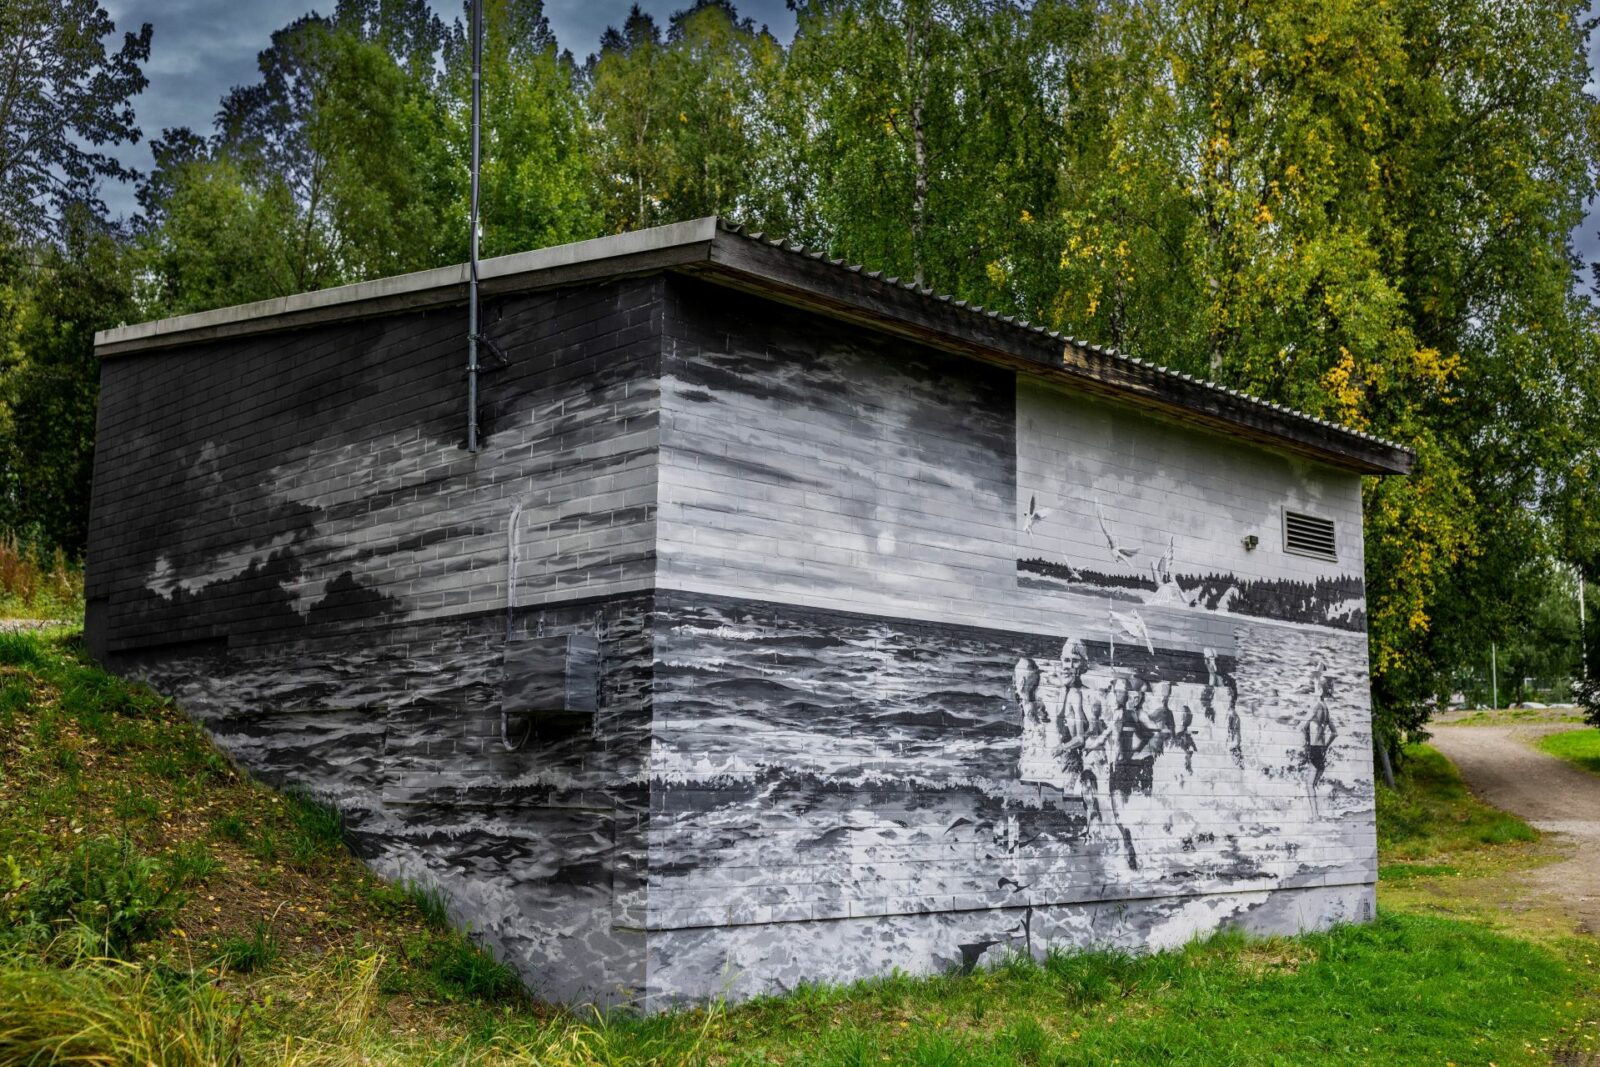 Tehdaskadun jätevedenpumppaamon muraaliteos, jossa on uimareita rannalla. Muraalin on maalannut Evgeni Ivanov.